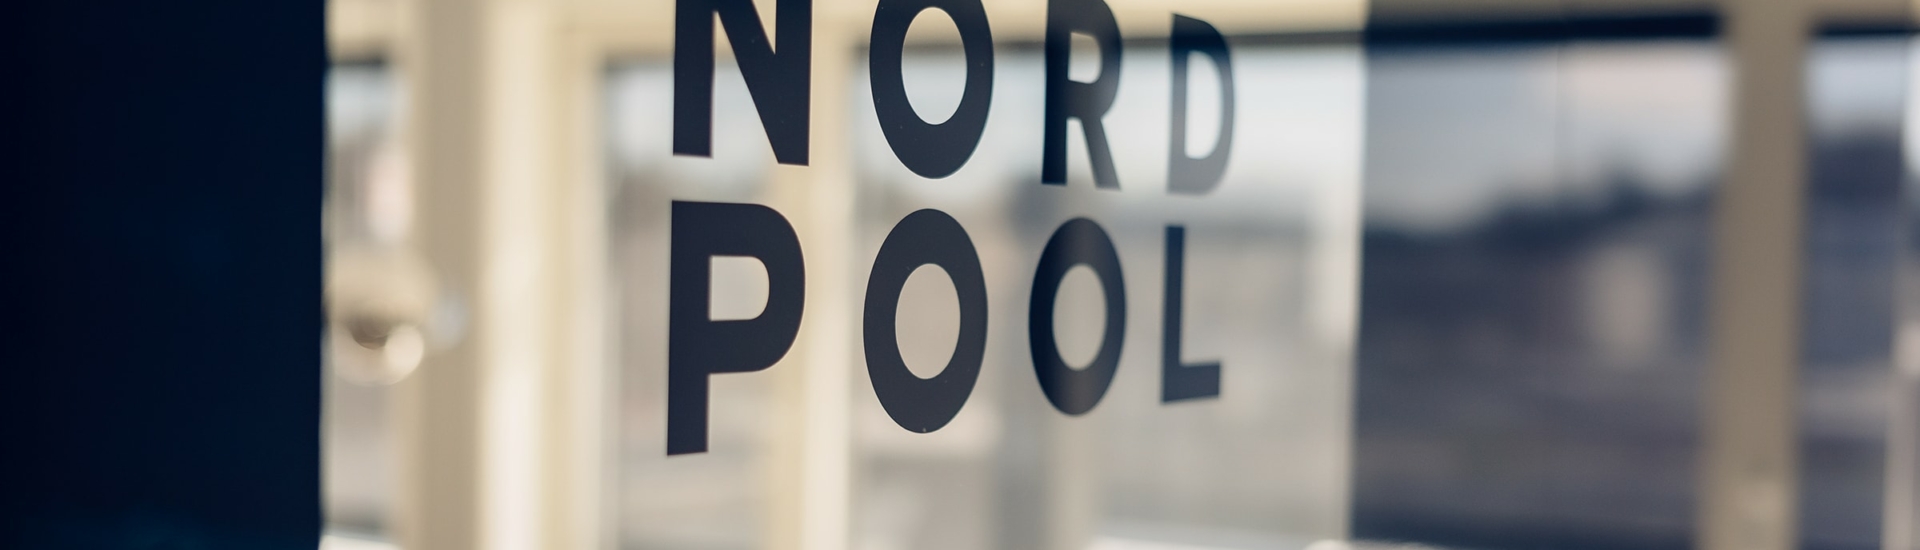 Nord Pool (photo by Ilja Hendel)